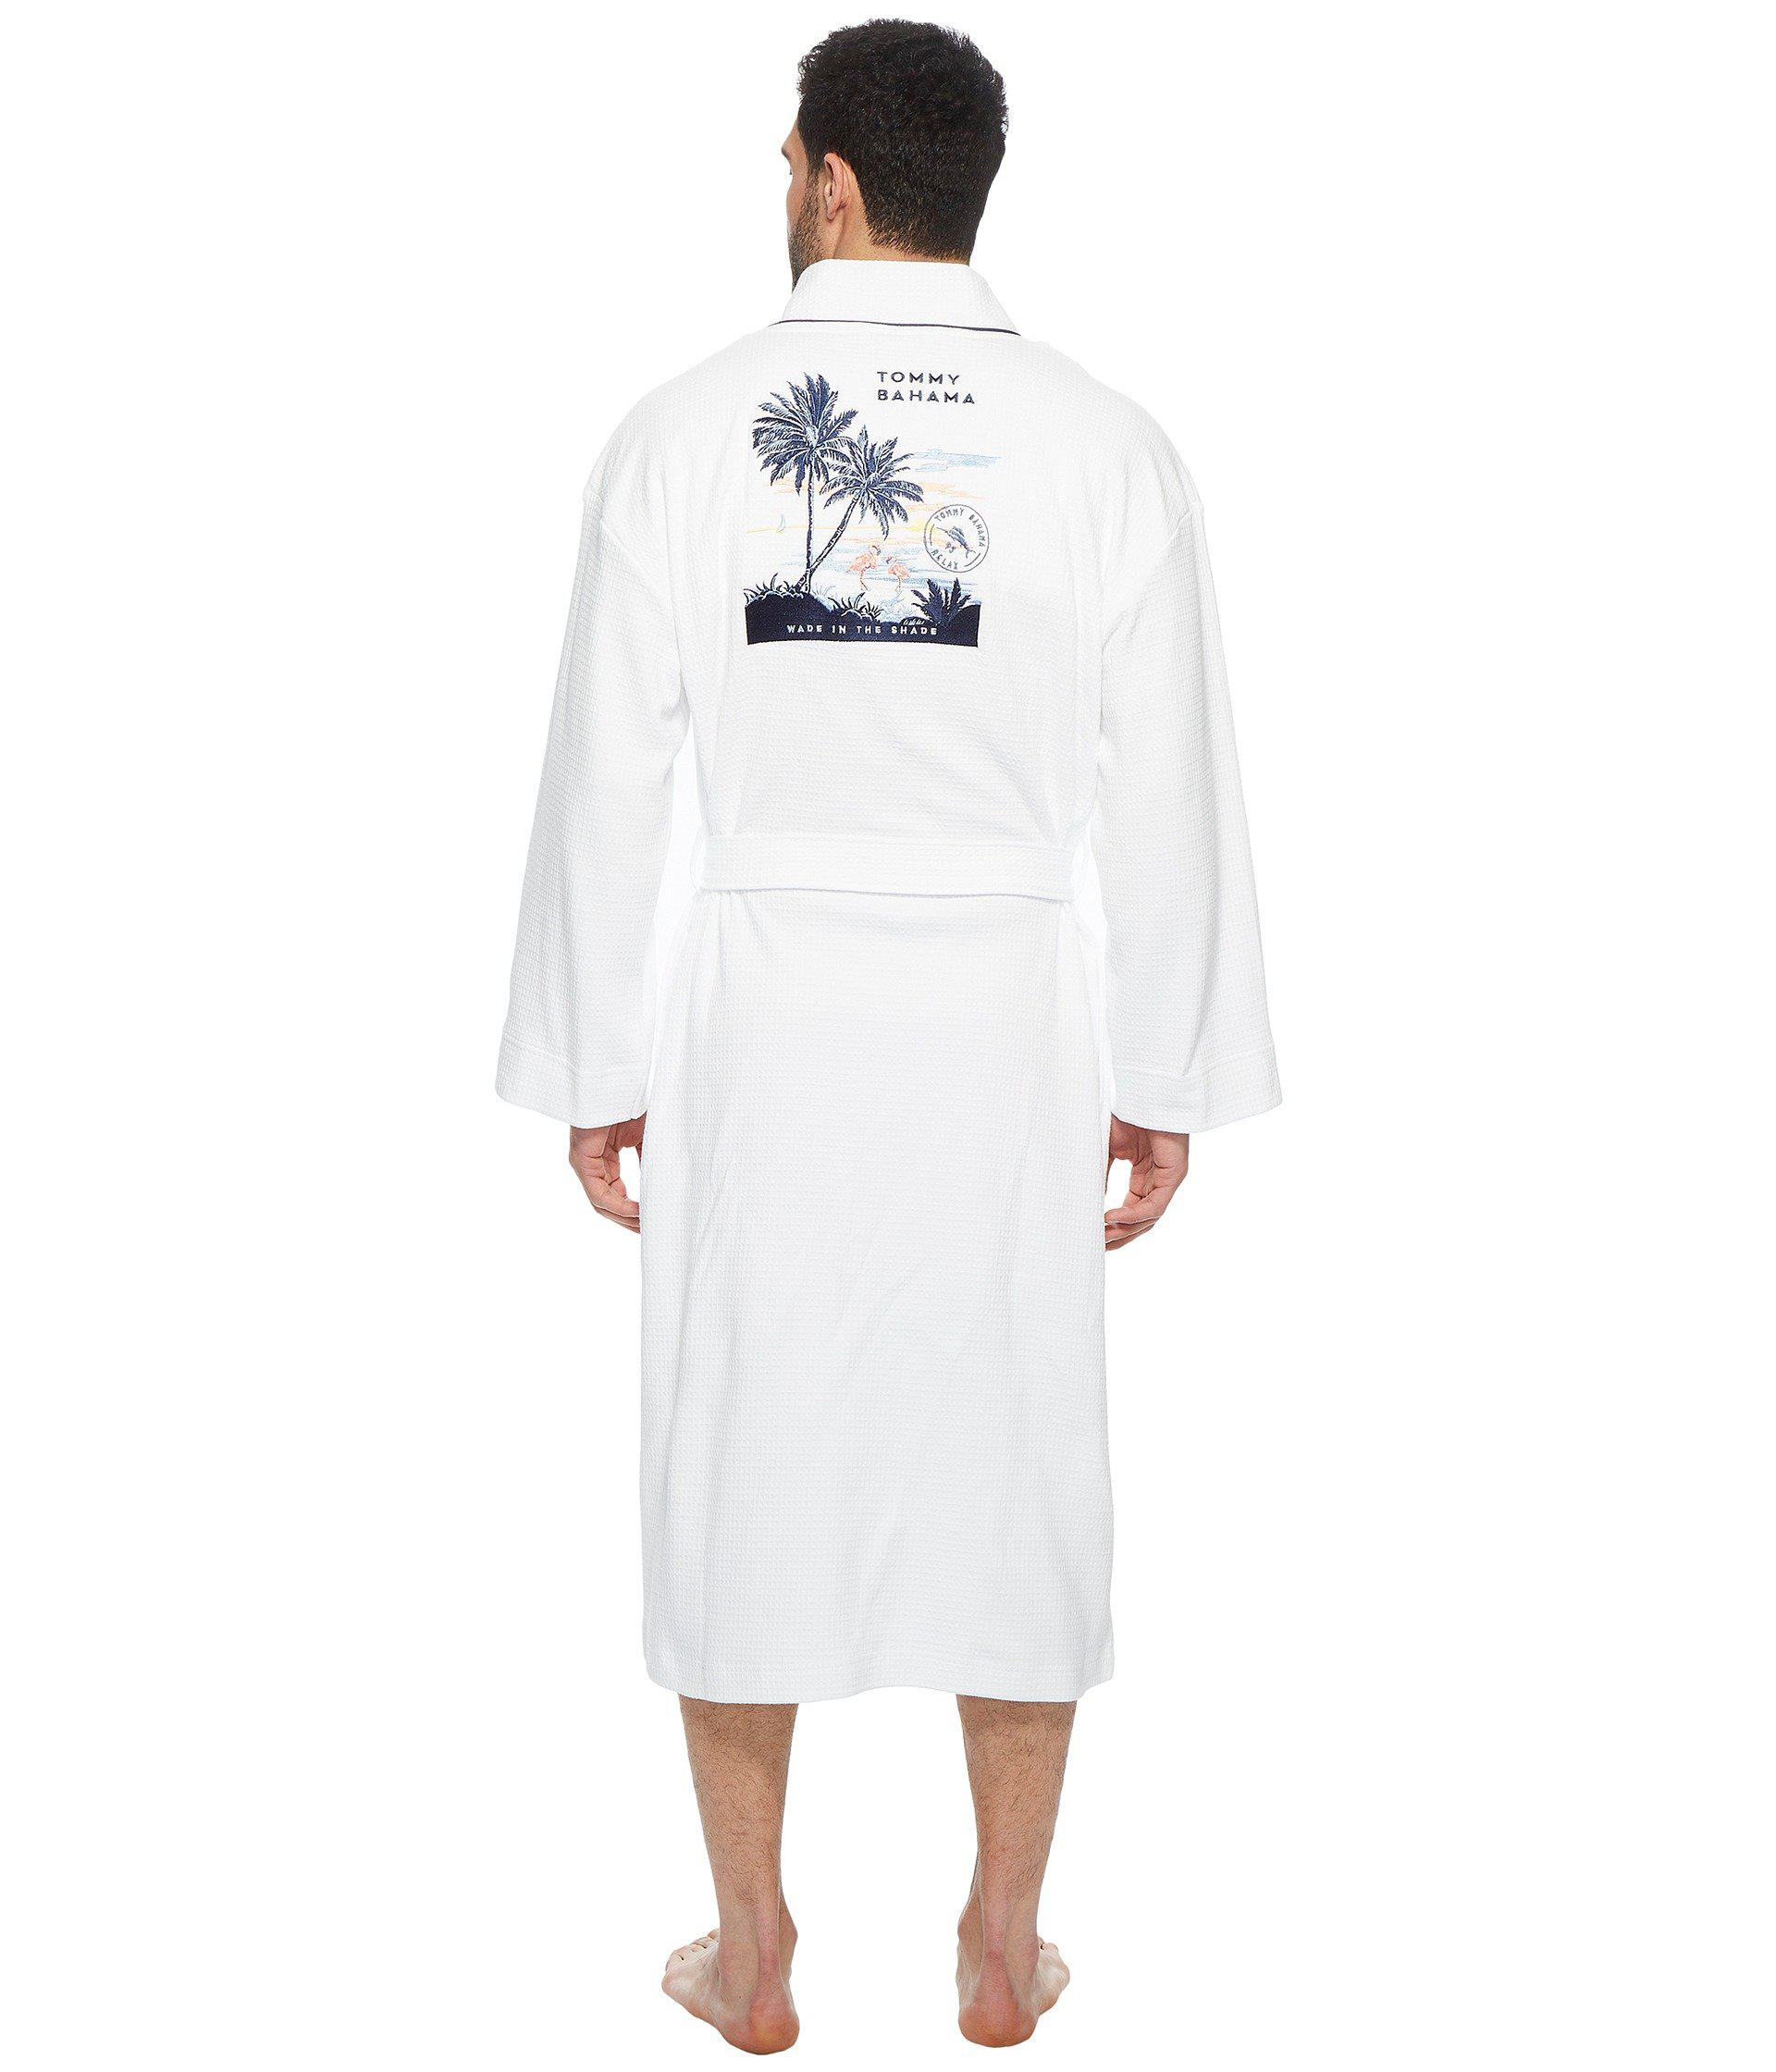 tommy bahama mens robe